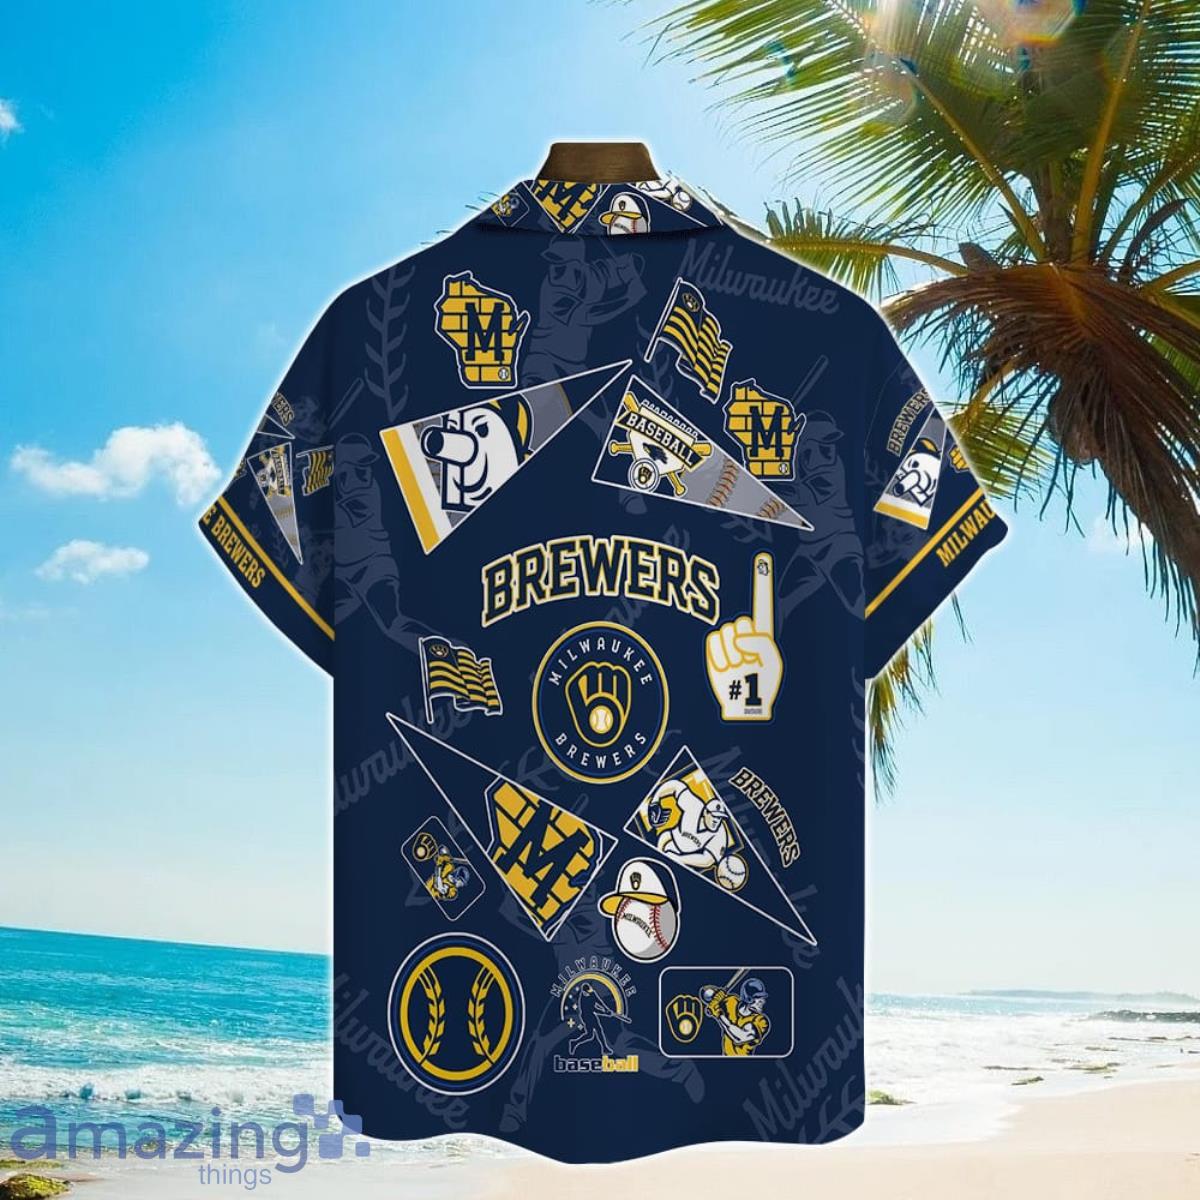 brewers shirt